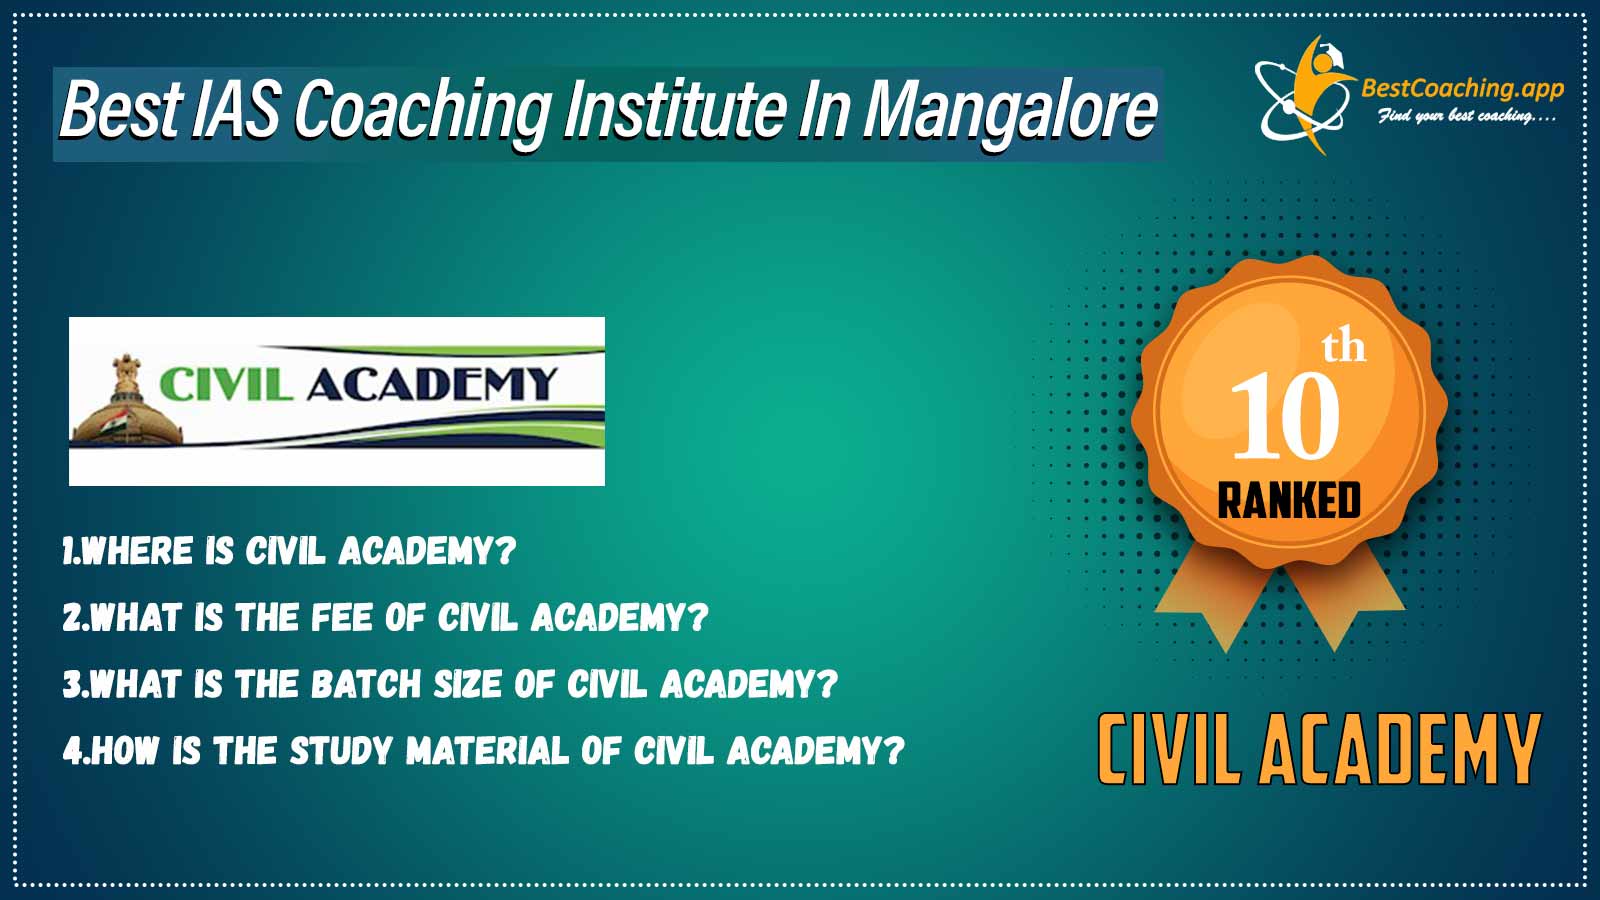 Top IAS Coaching in Mangalore